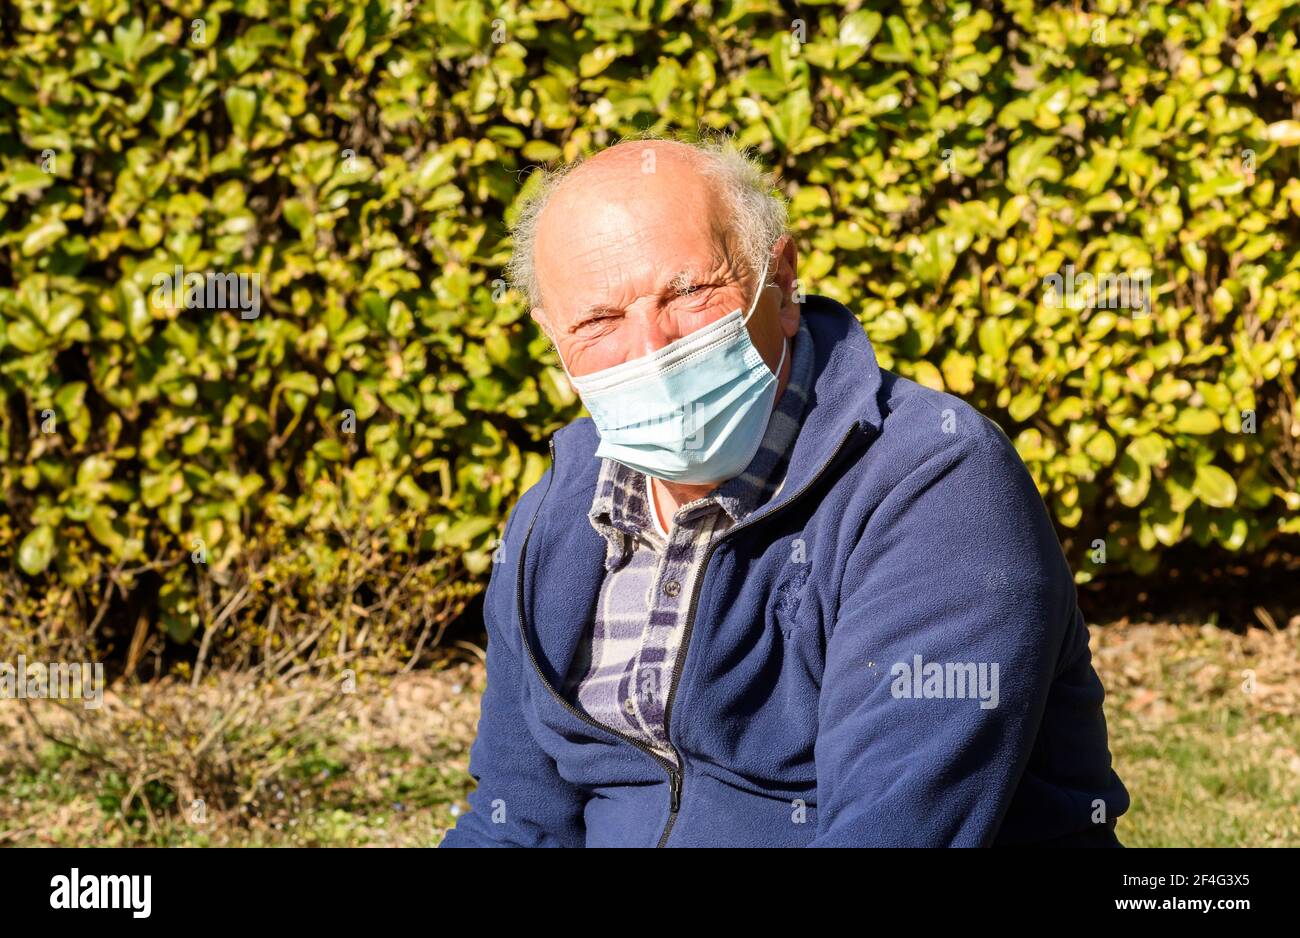 Ritratto dell'uomo anziano con maschera medica protettiva da pandemia di coronavirus. Concetto del pericolo del coronavirus per gli anziani. Foto Stock